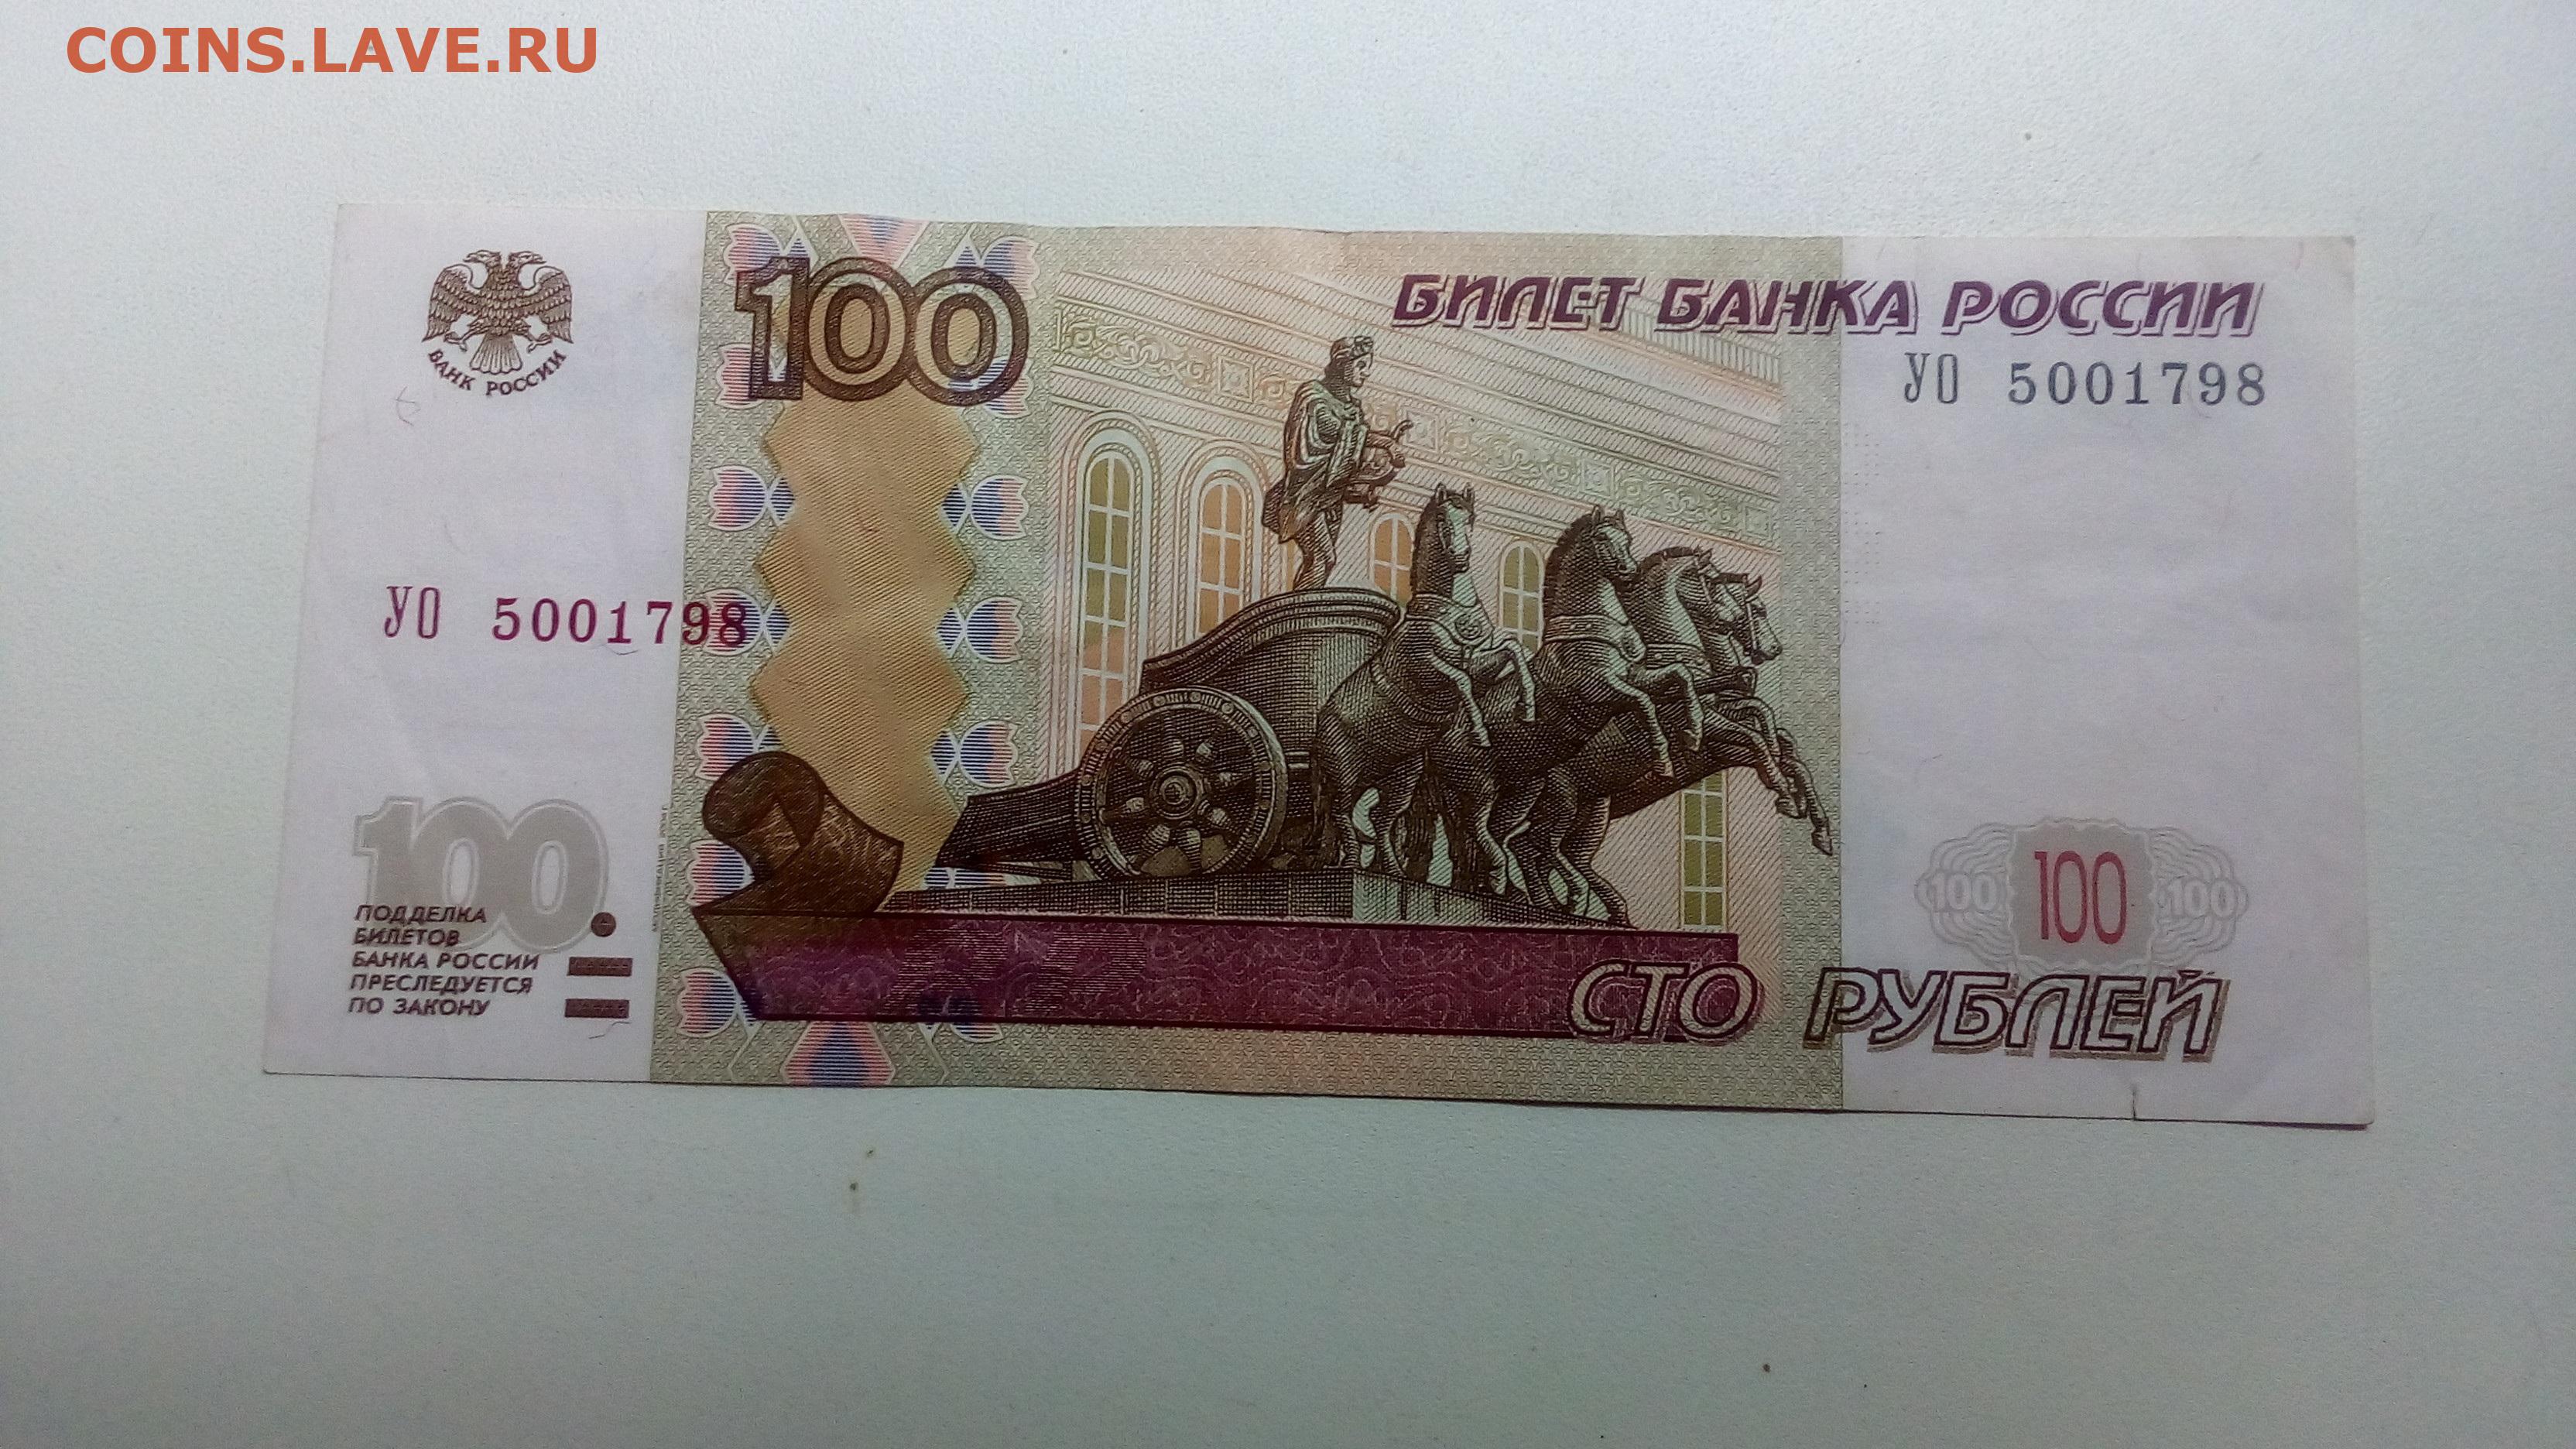 4 80 в рублях. 100 Рублей. Купюра 100 рублей. Банкнота 100 рублей 1997. СТО рублей для распечатки.